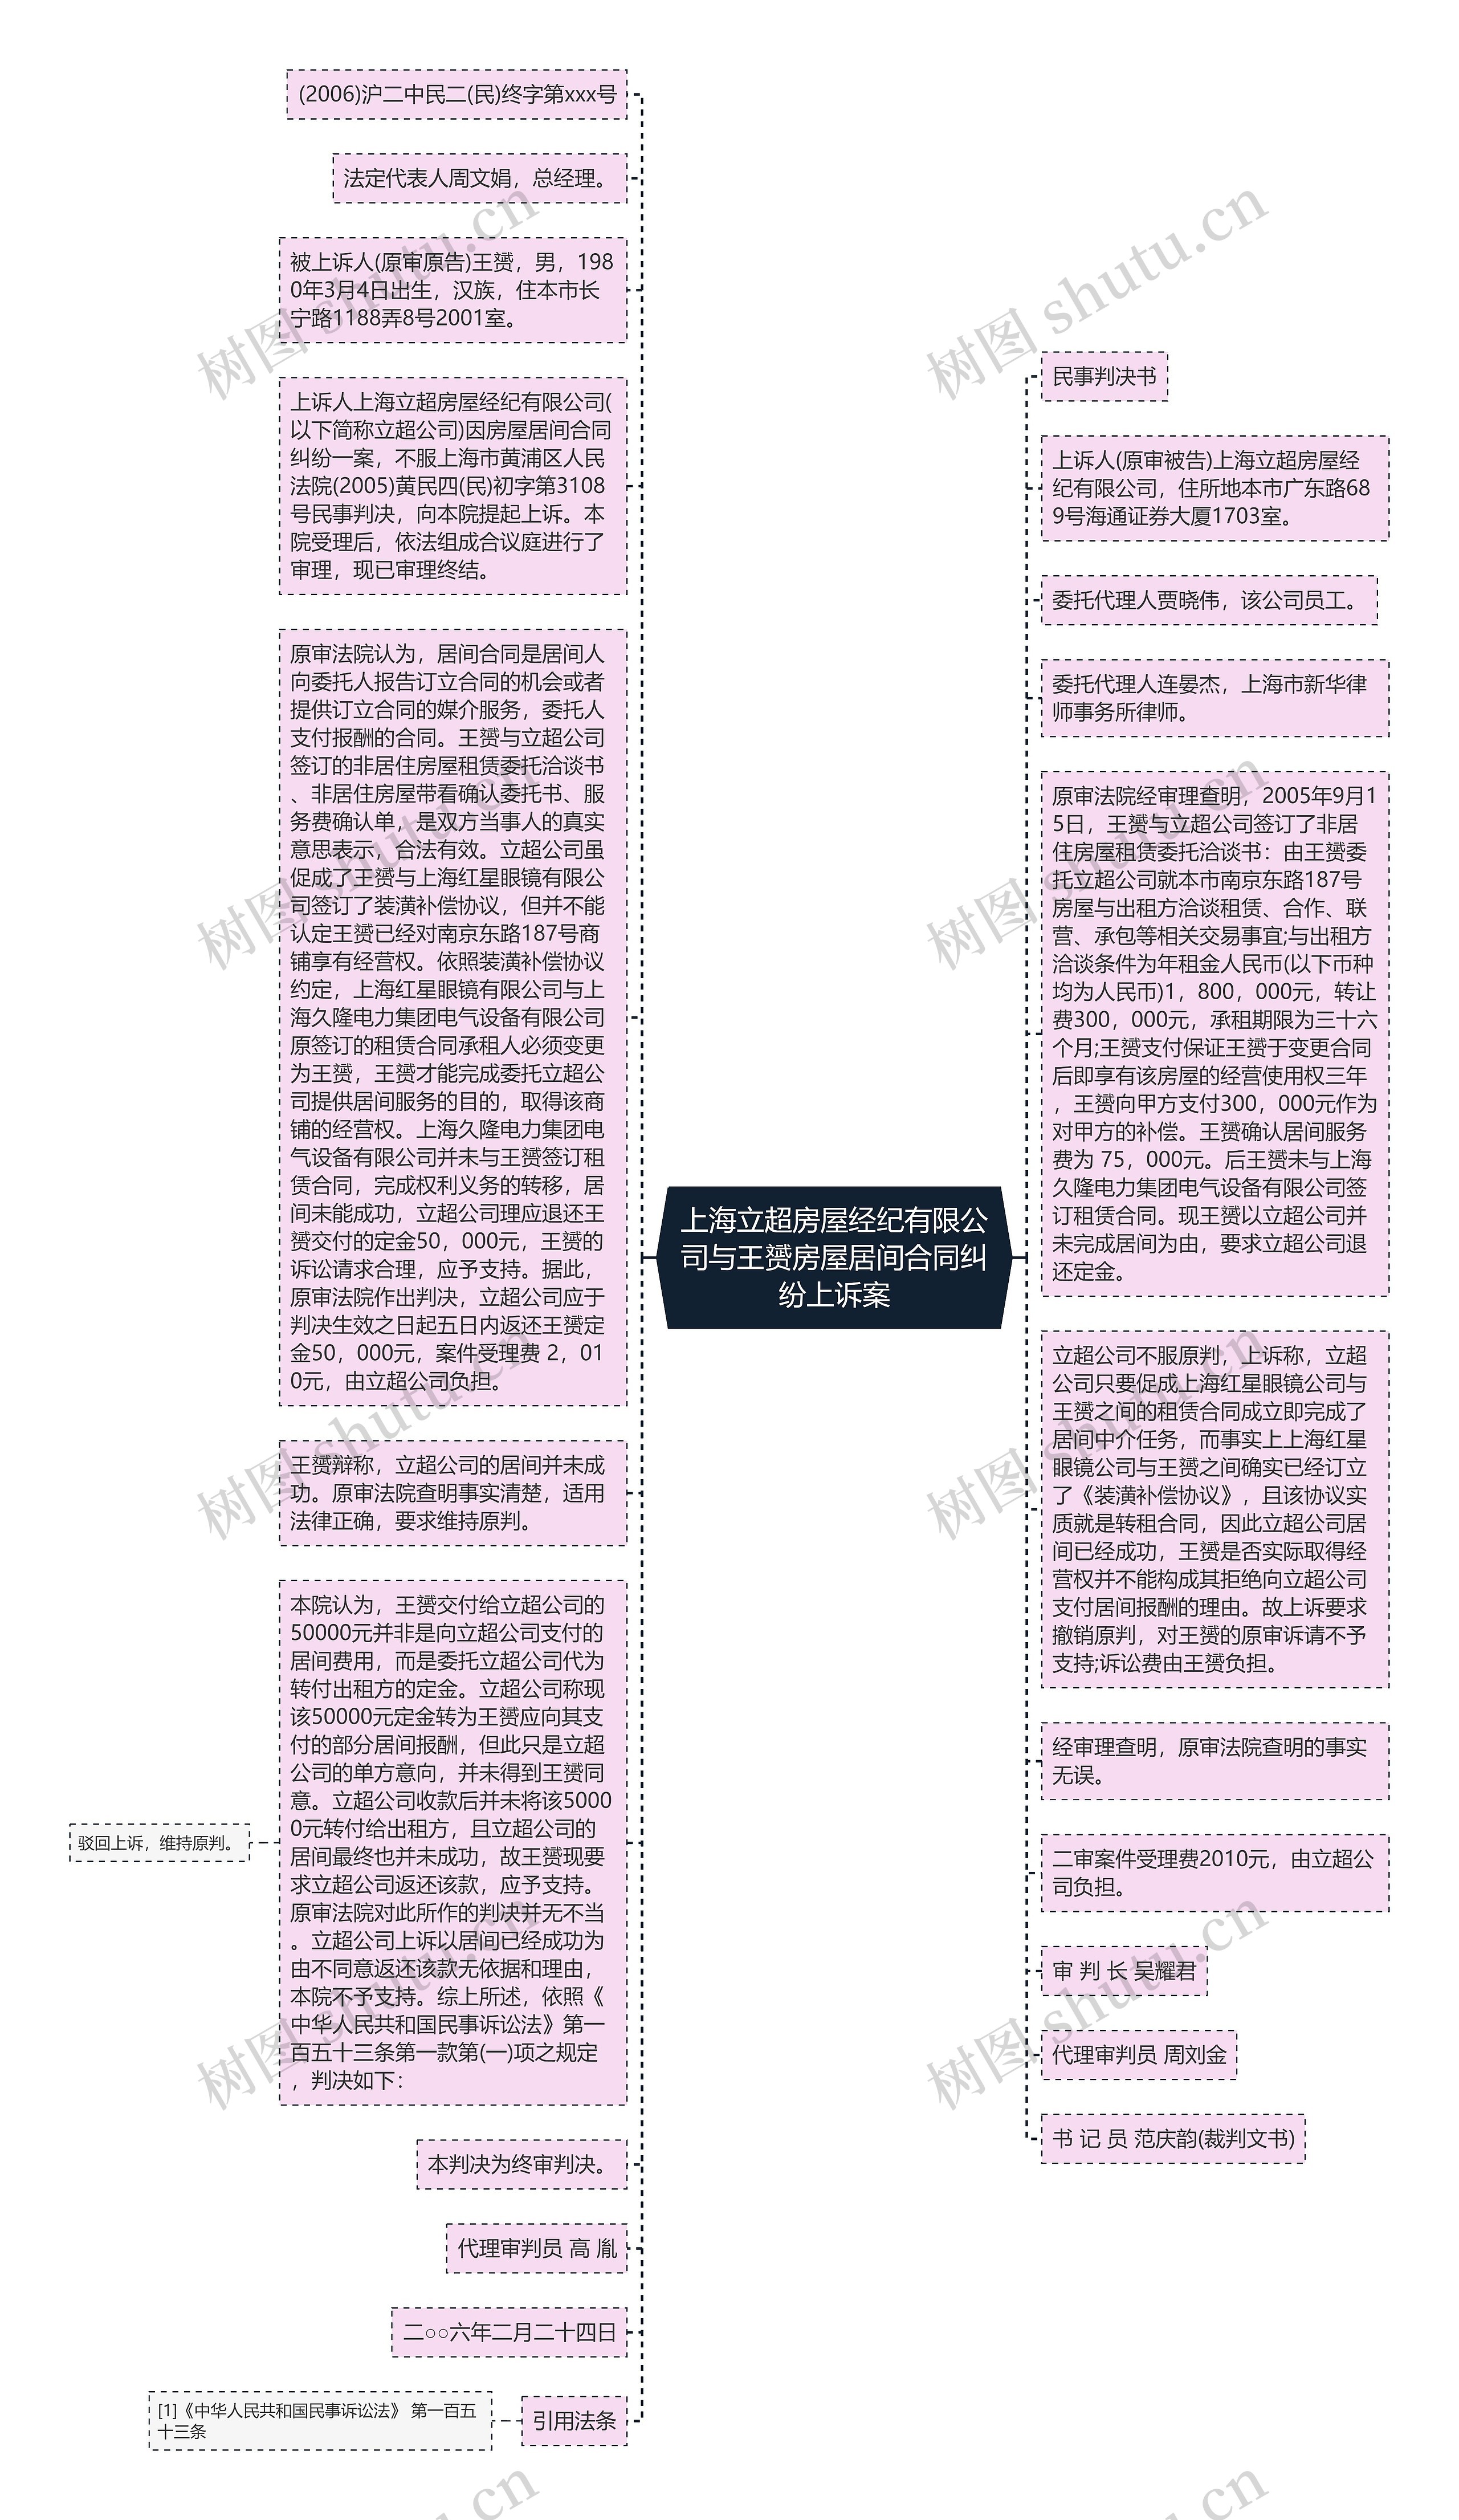 上海立超房屋经纪有限公司与王赟房屋居间合同纠纷上诉案思维导图